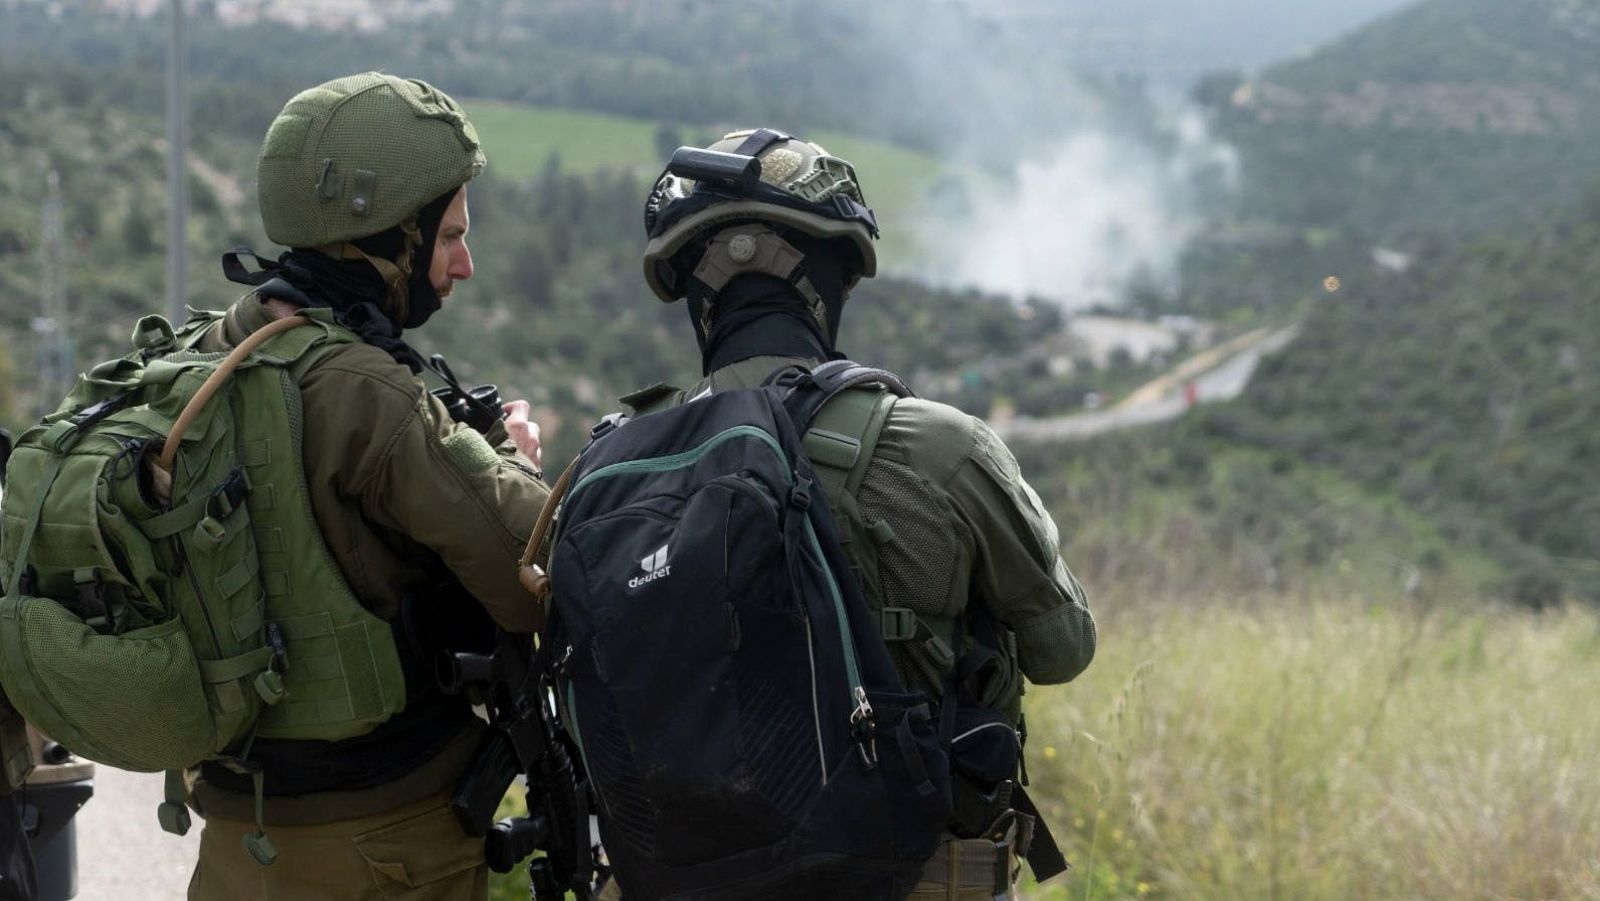 Continúa la polémica por los soldados israelíes riéndose de los palestinos